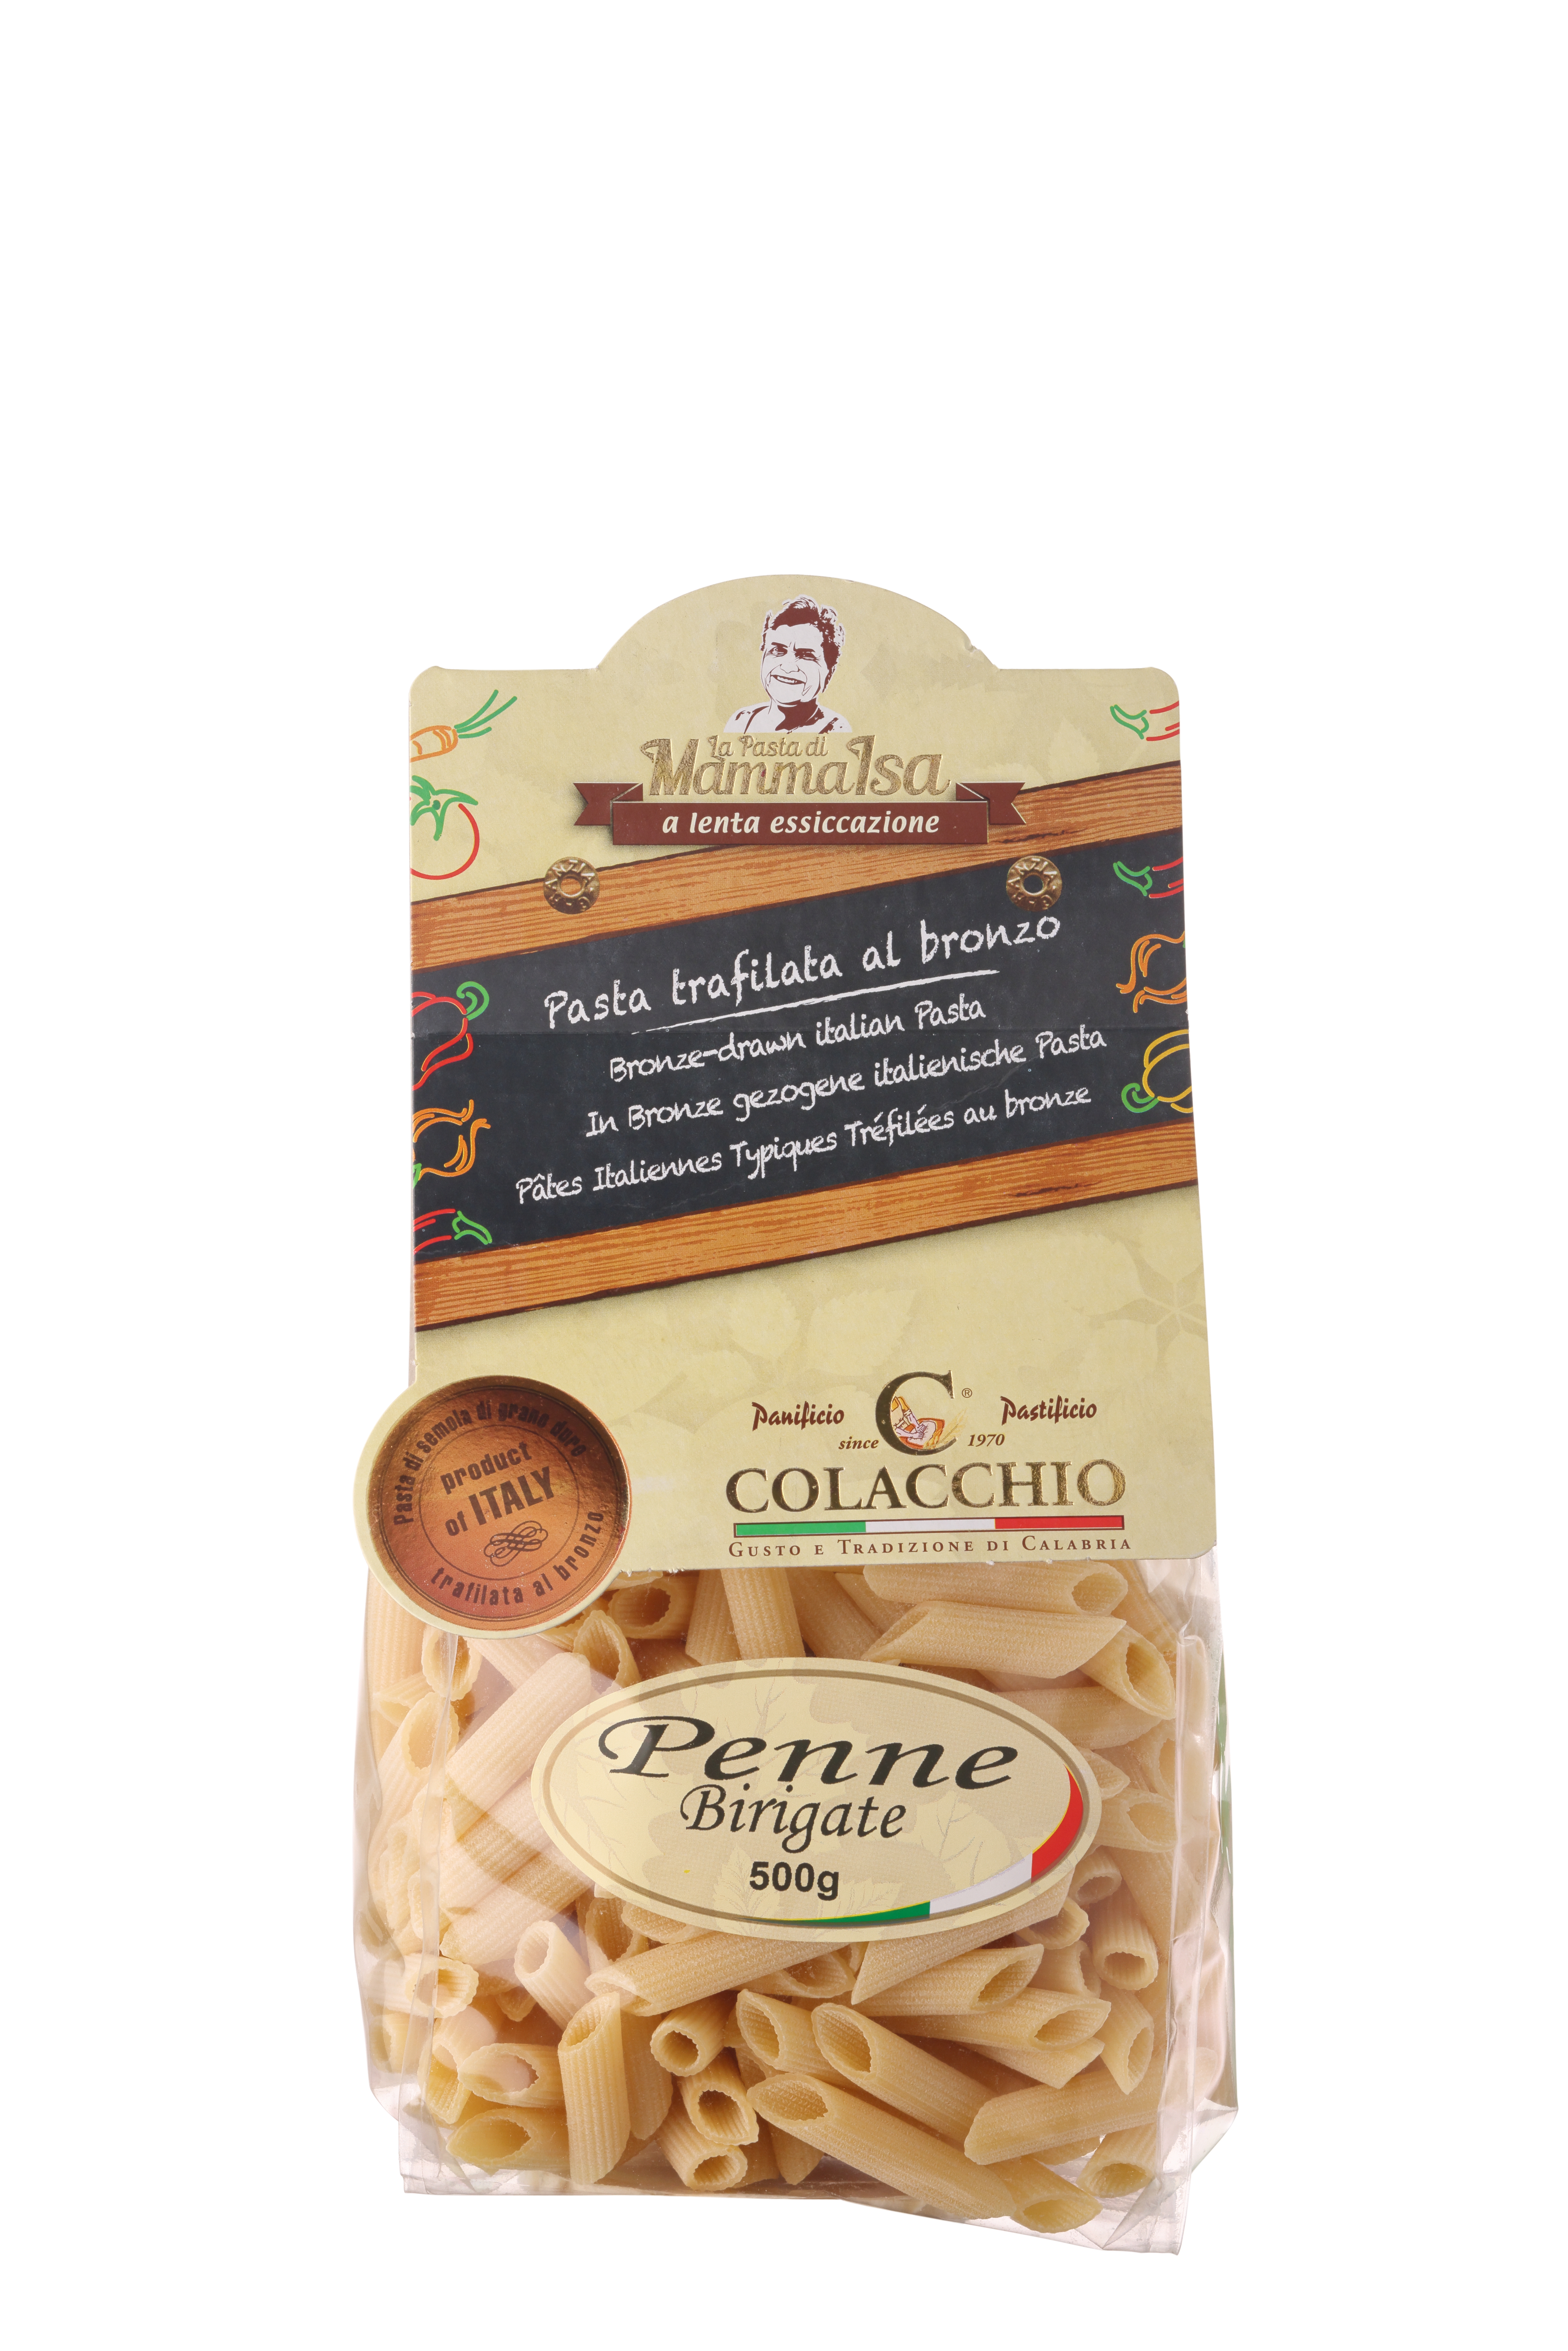 Colacchio, "Penne Birigate" Pasta, 500g